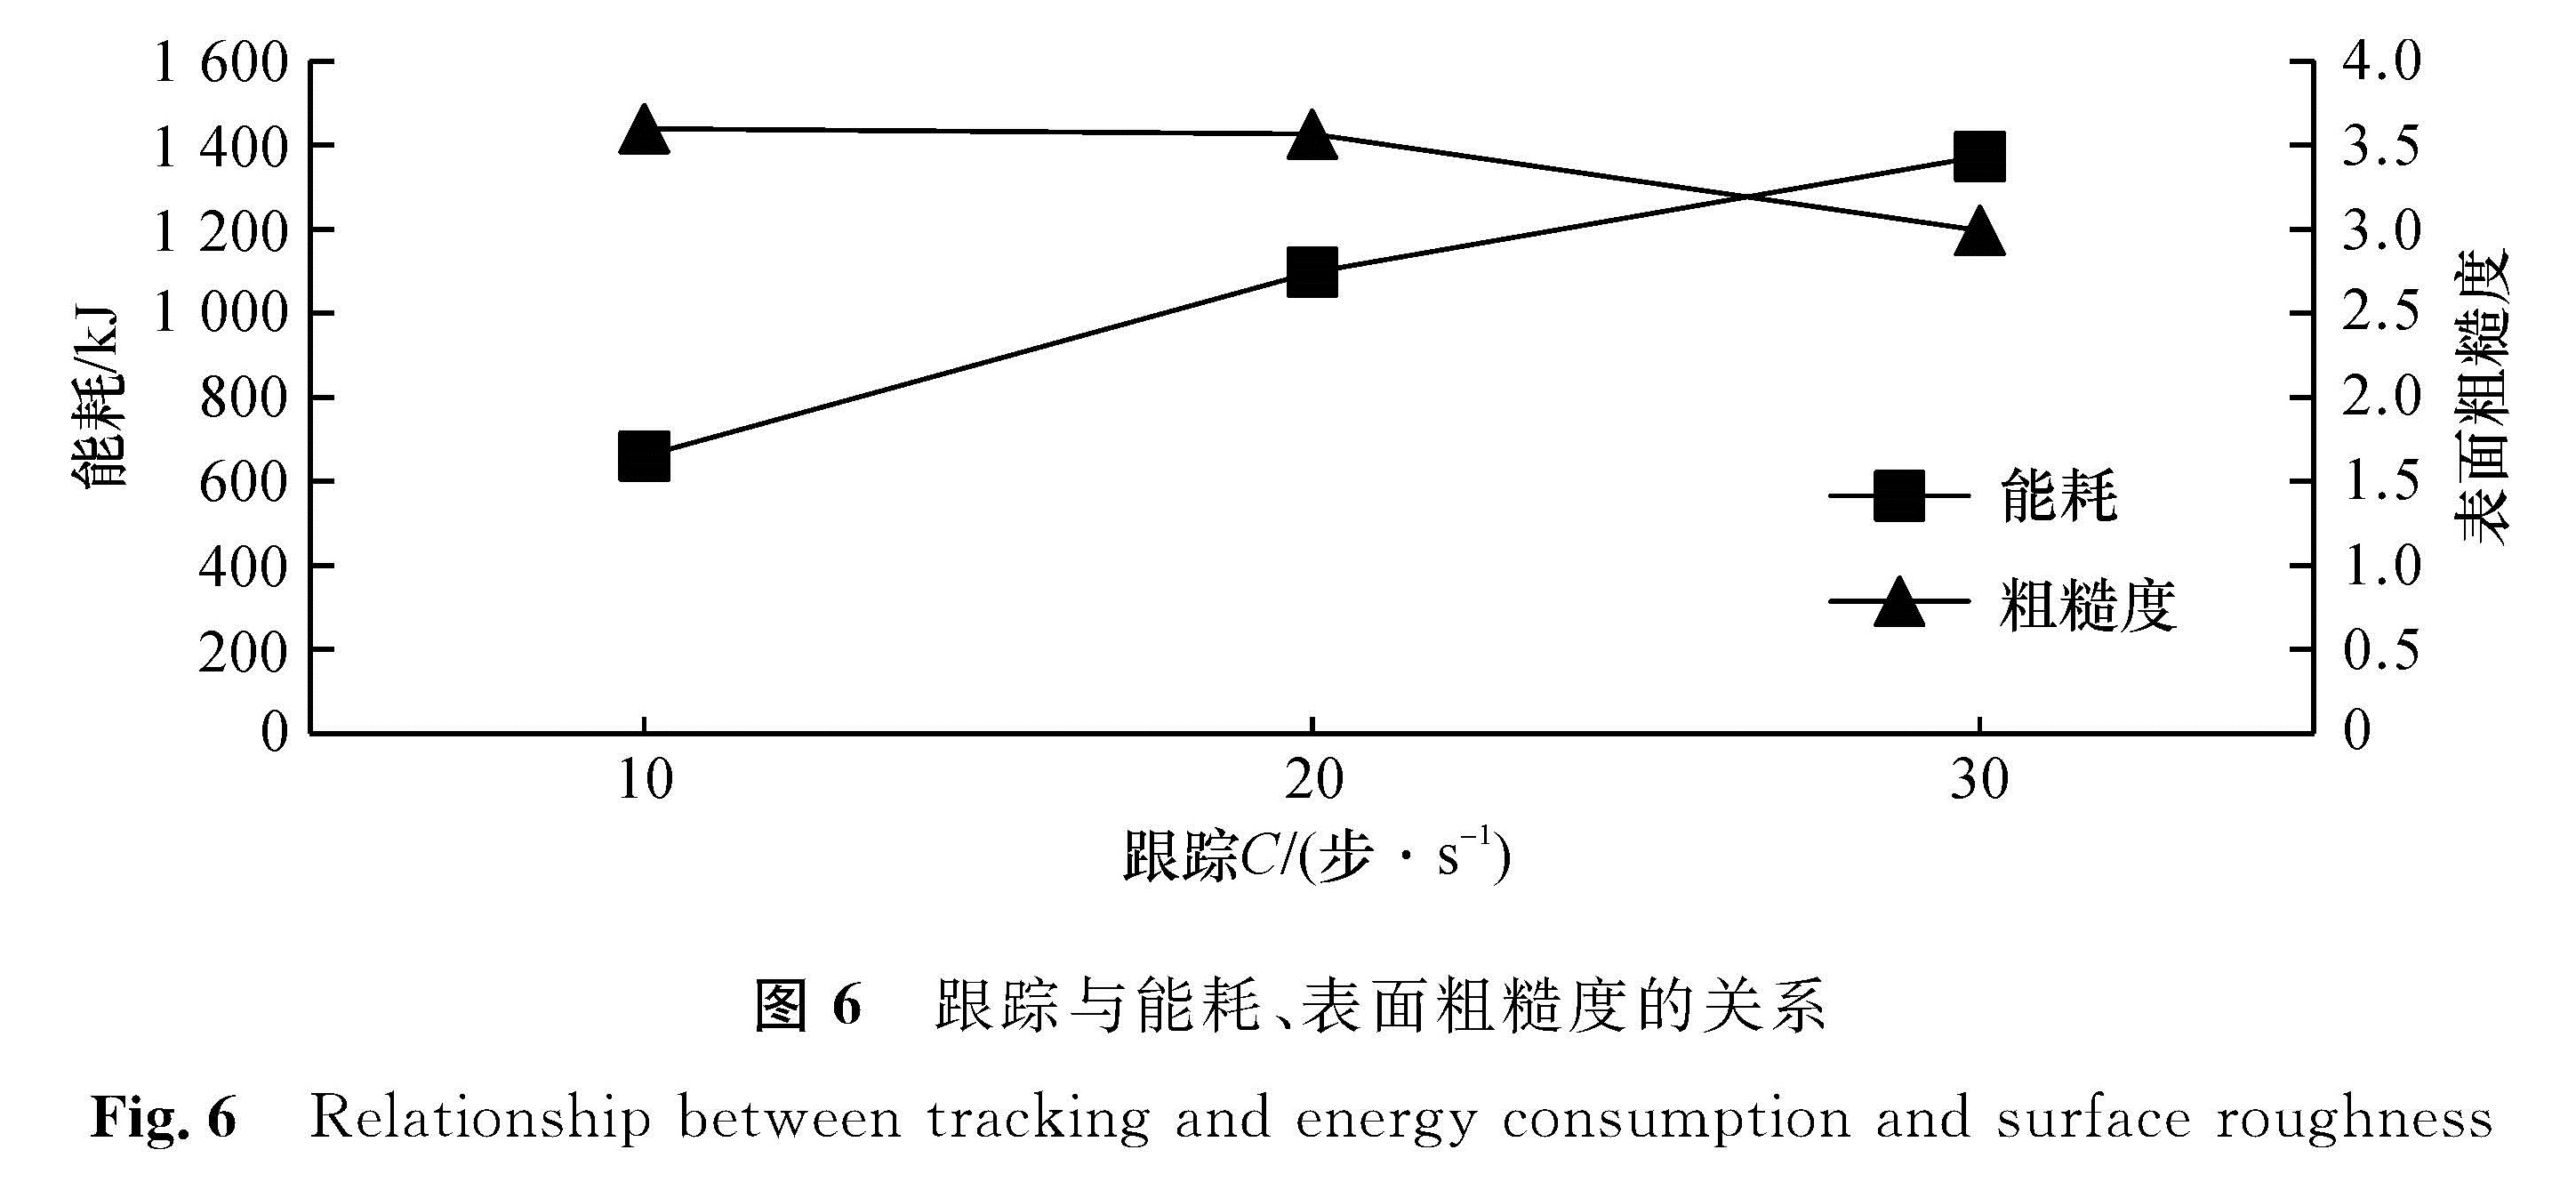 图6 跟踪与能耗、表面粗糙度的关系<br/>Fig.6 Relationship between tracking and energy consumption and surface roughness